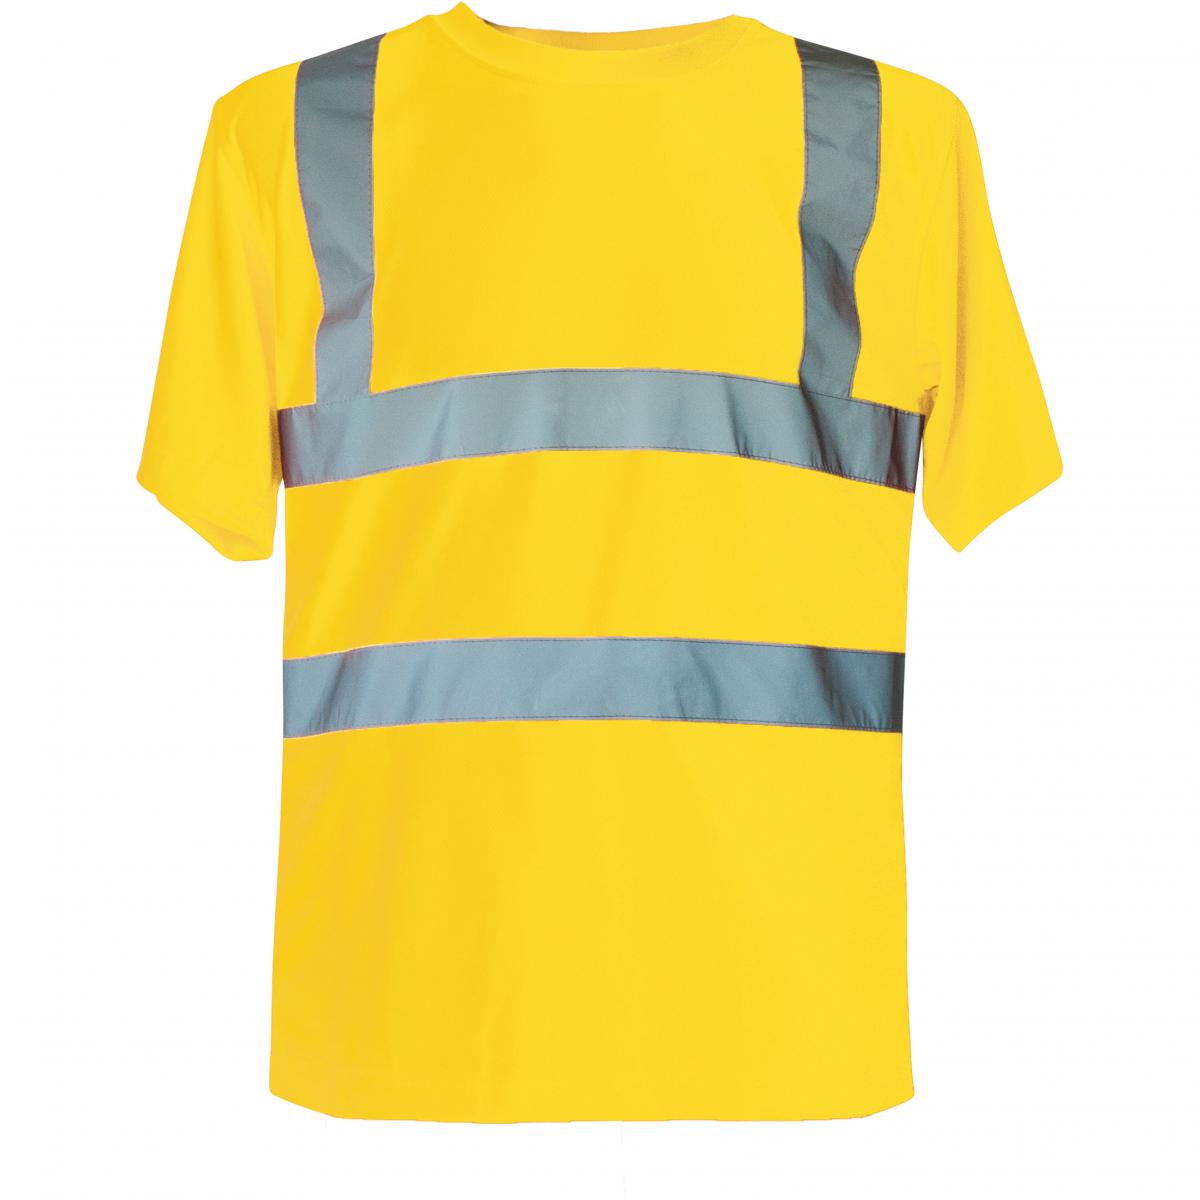 Hersteller: Korntex Herstellernummer: KXS Artikelbezeichnung: Herren Hi-Viz Workwear Arbeits T-Shirt EN ISO 20471 Farbe: Signal Yellow